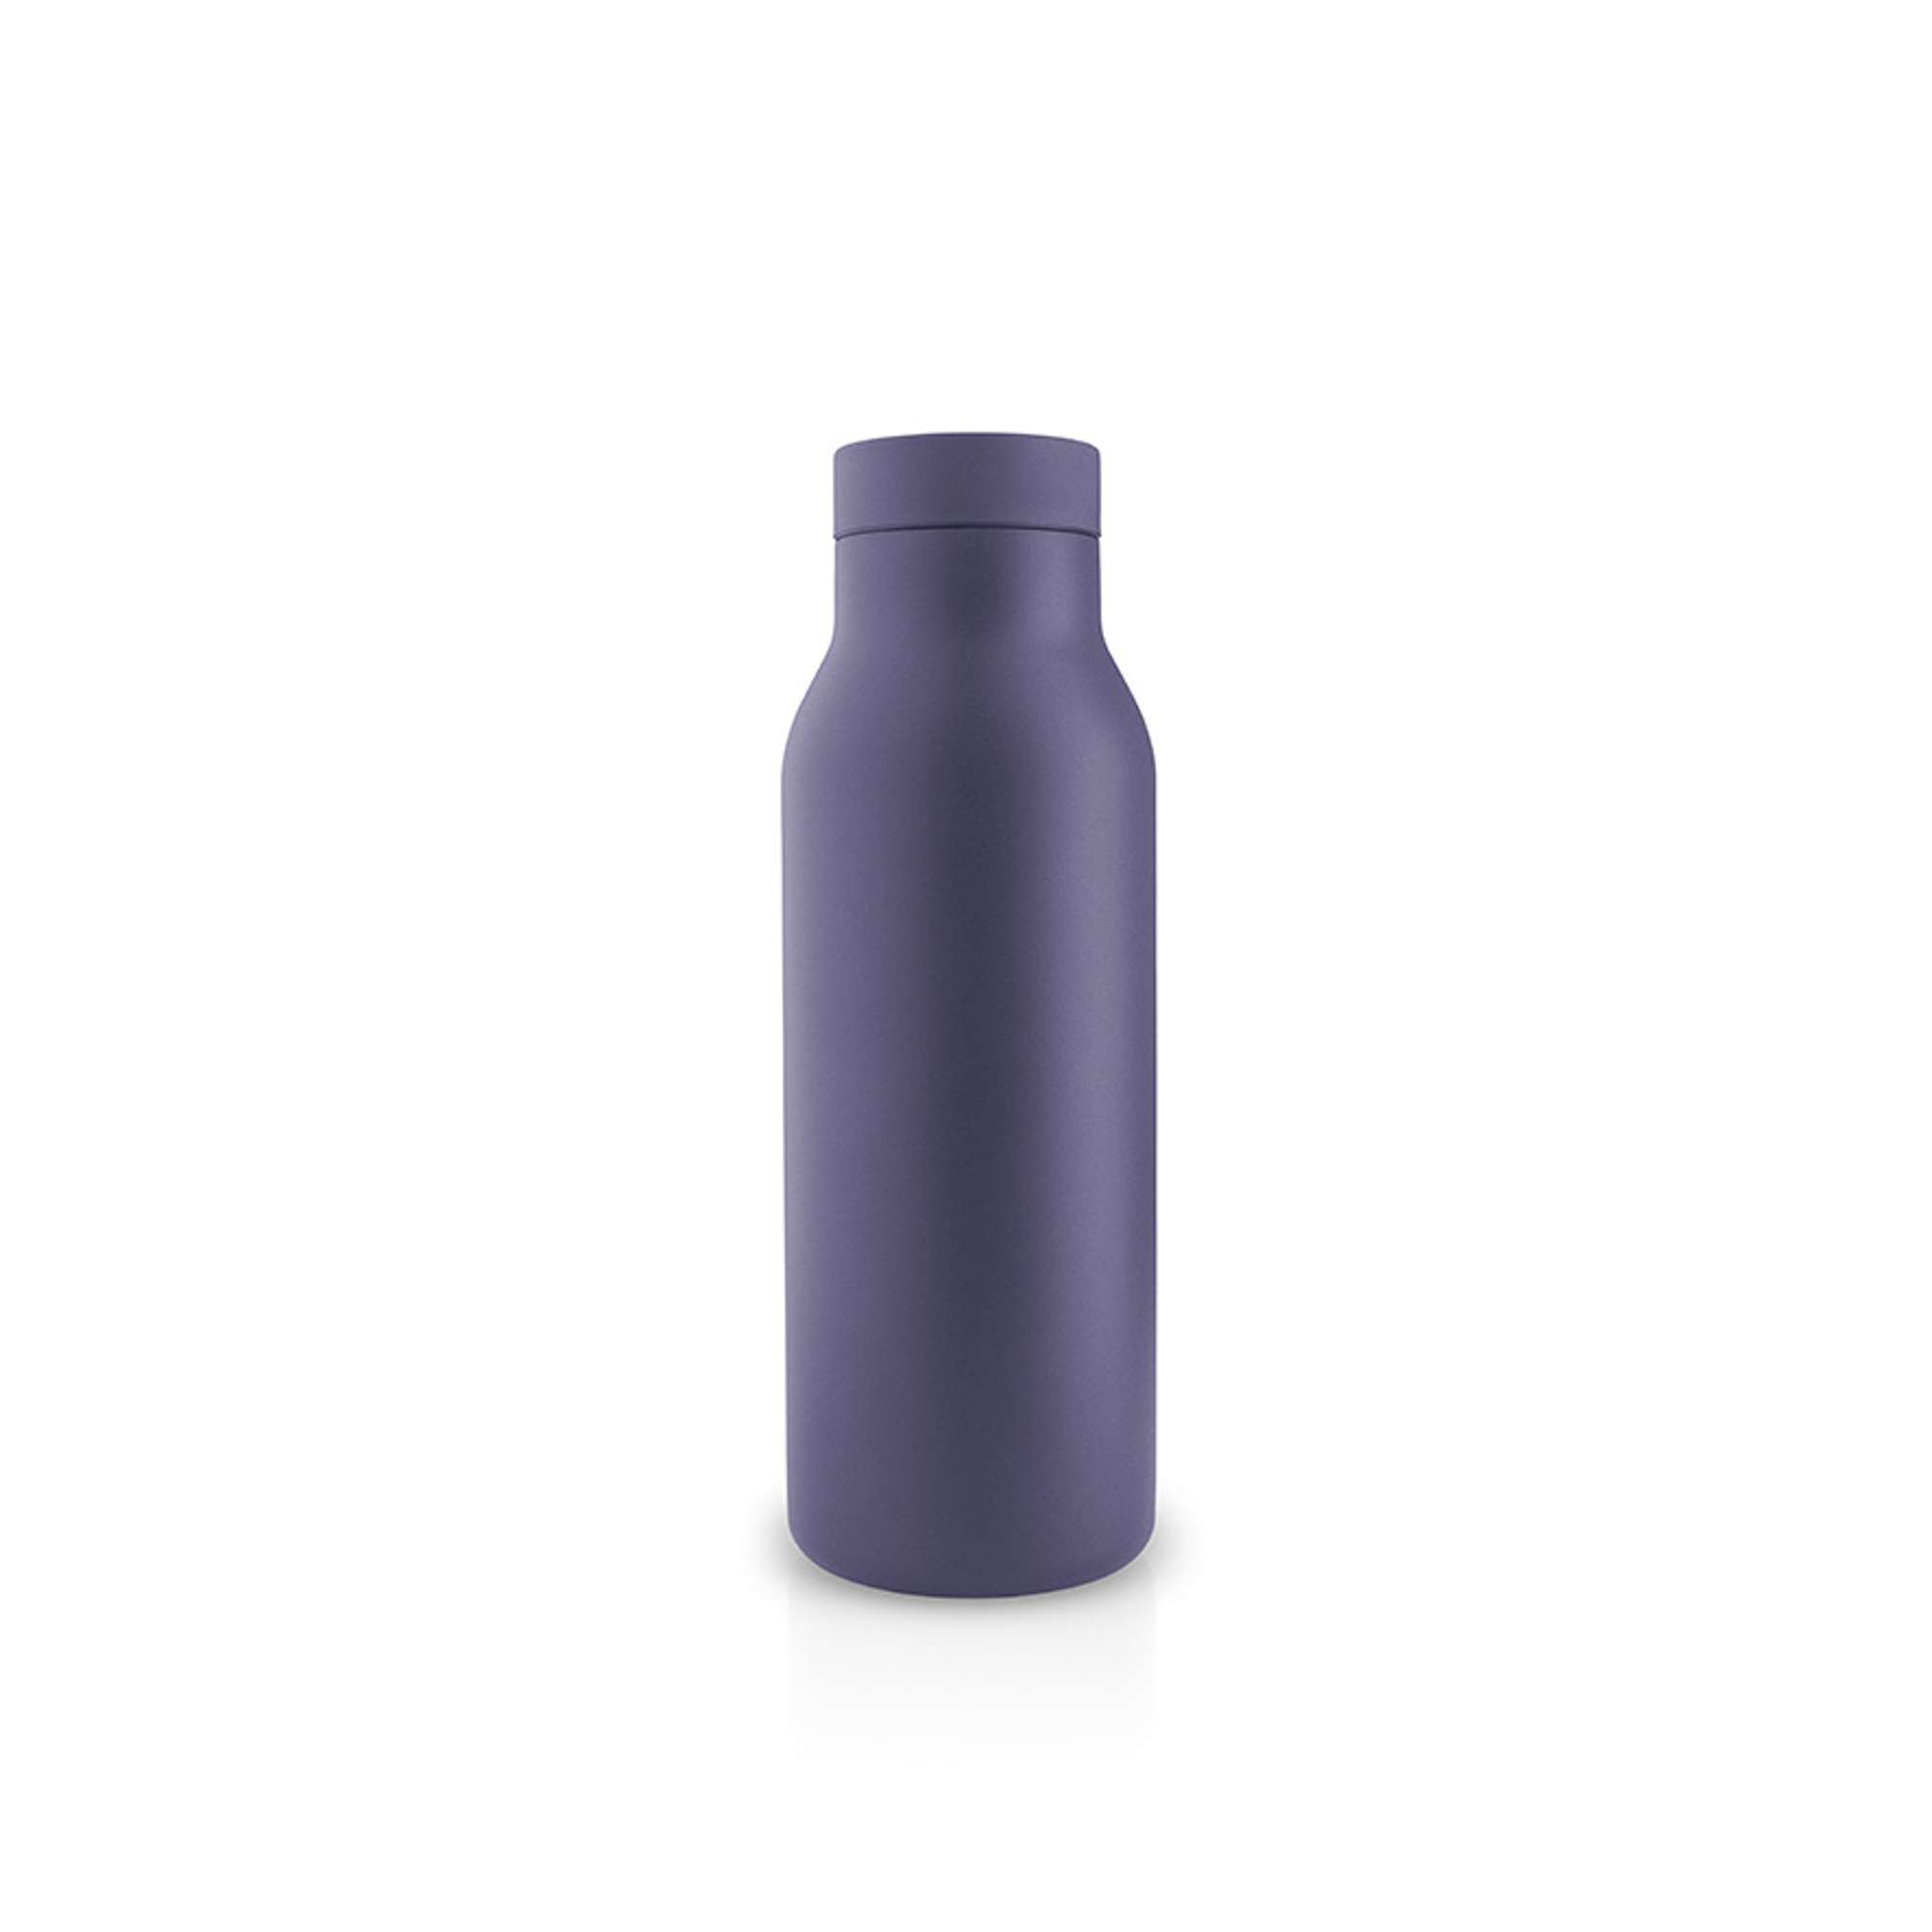 Urban termoflaske - 0.5 litres - Violet blue